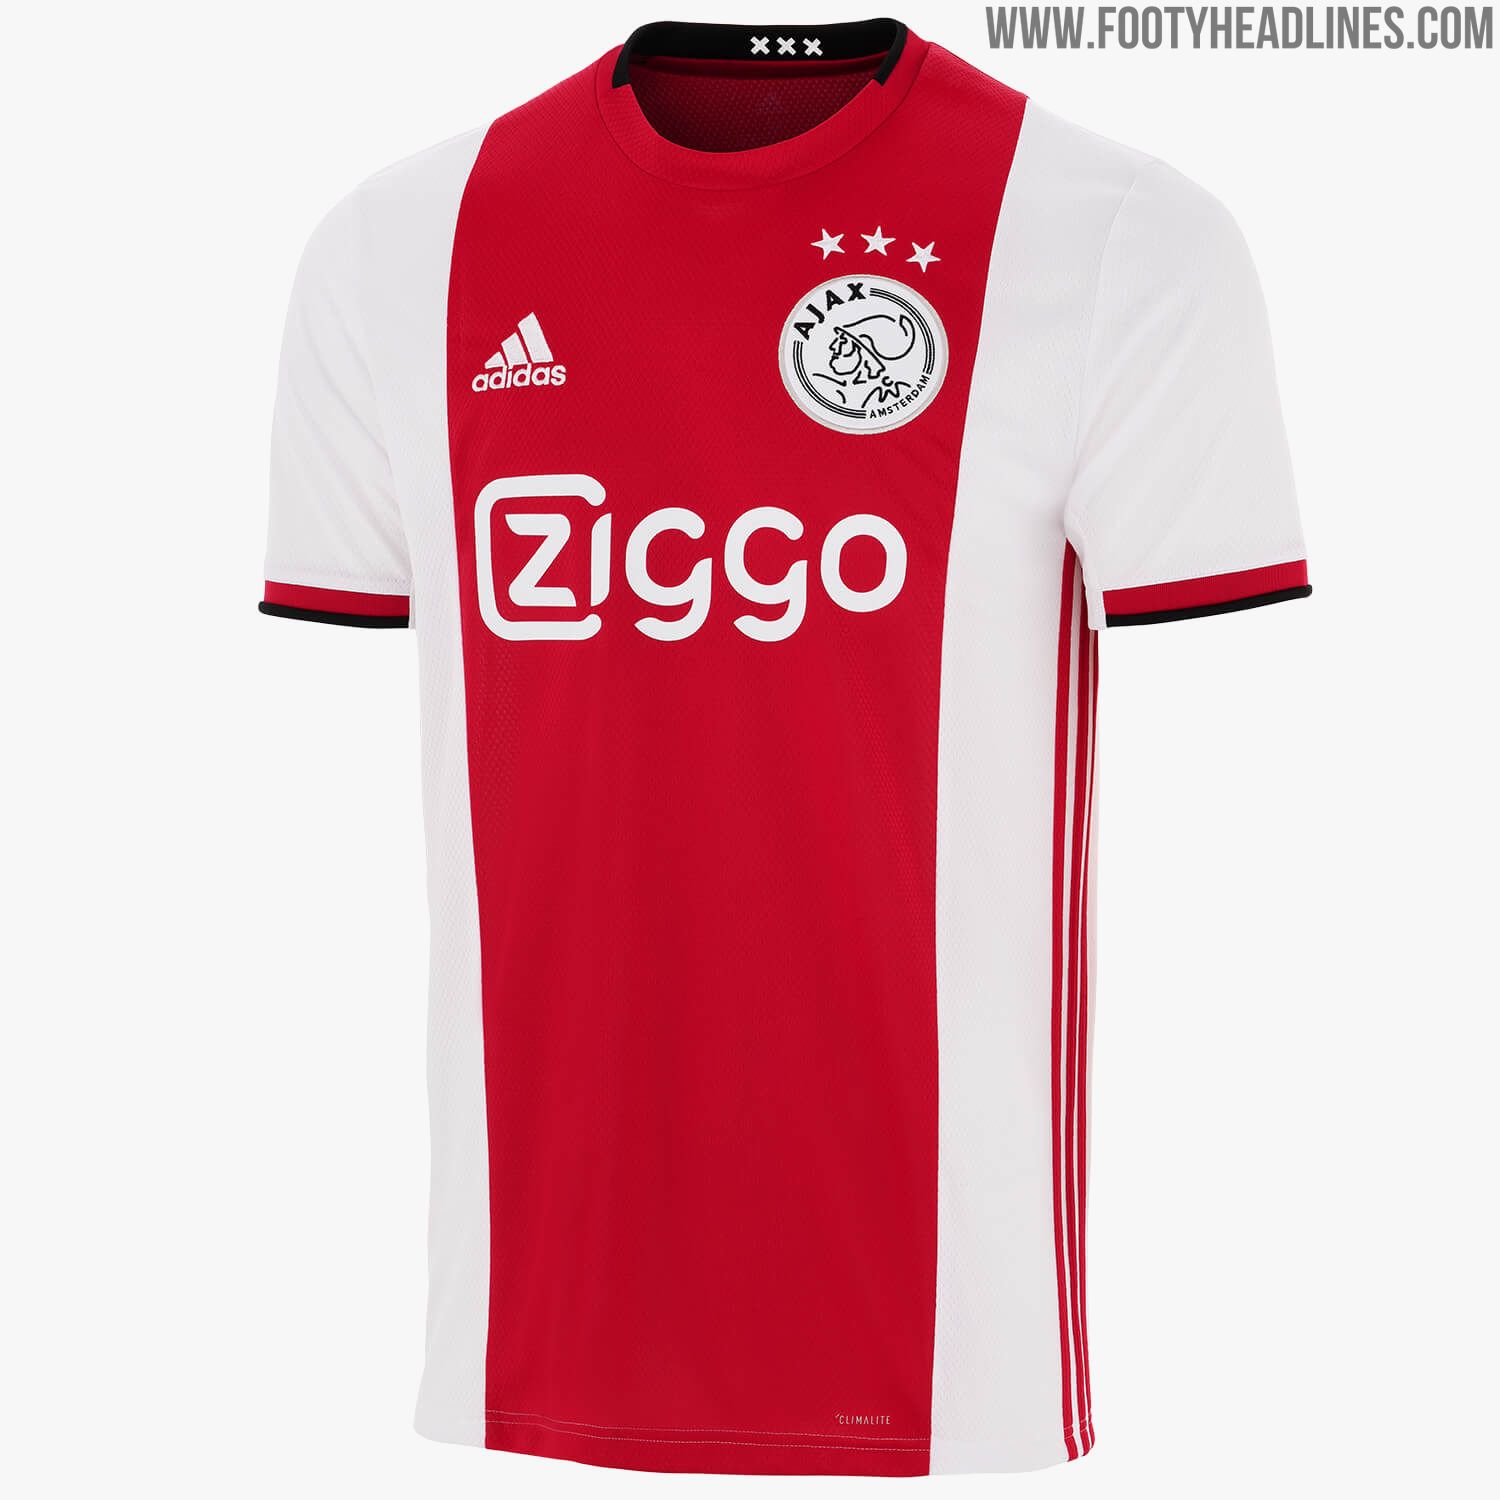 All Adidas 19-20 Home Kits Leaked / Released - Ajax, Bayern, Madrid